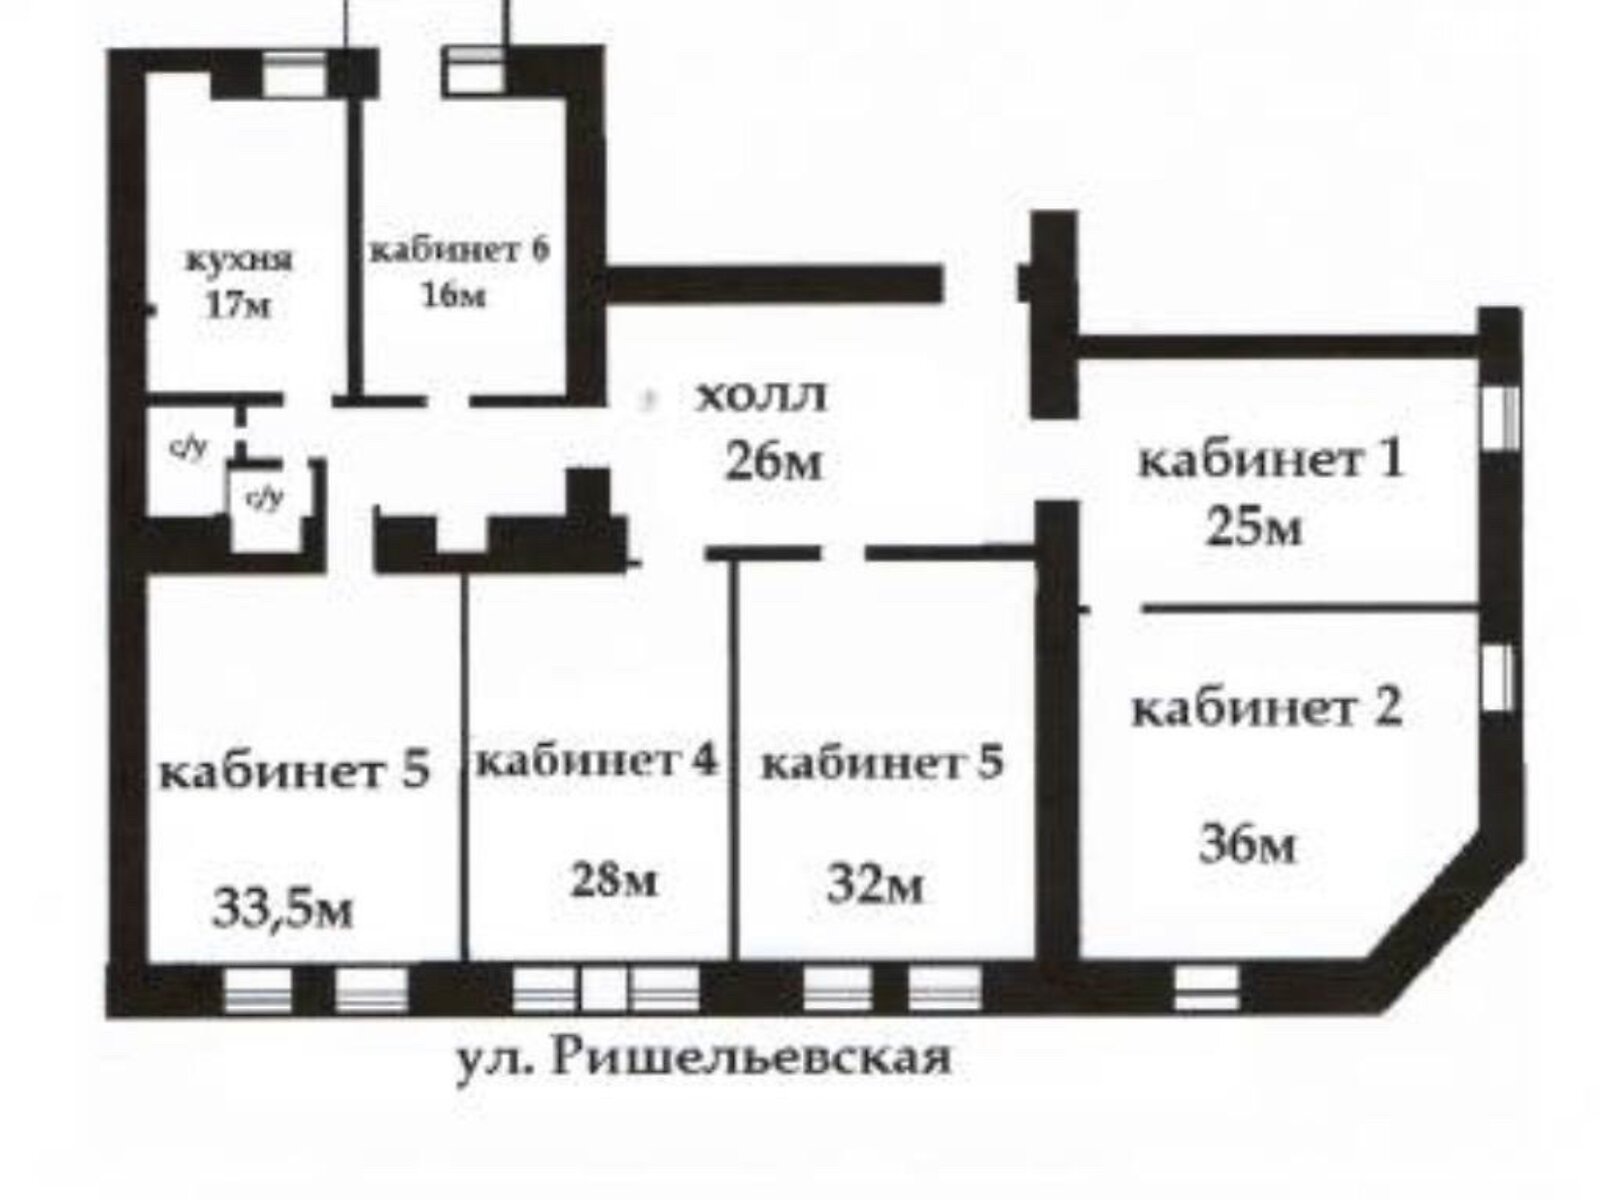 Аренда офисного помещения в Одессе, Ришельевская улица 17, помещений -, этаж - 2 фото 1